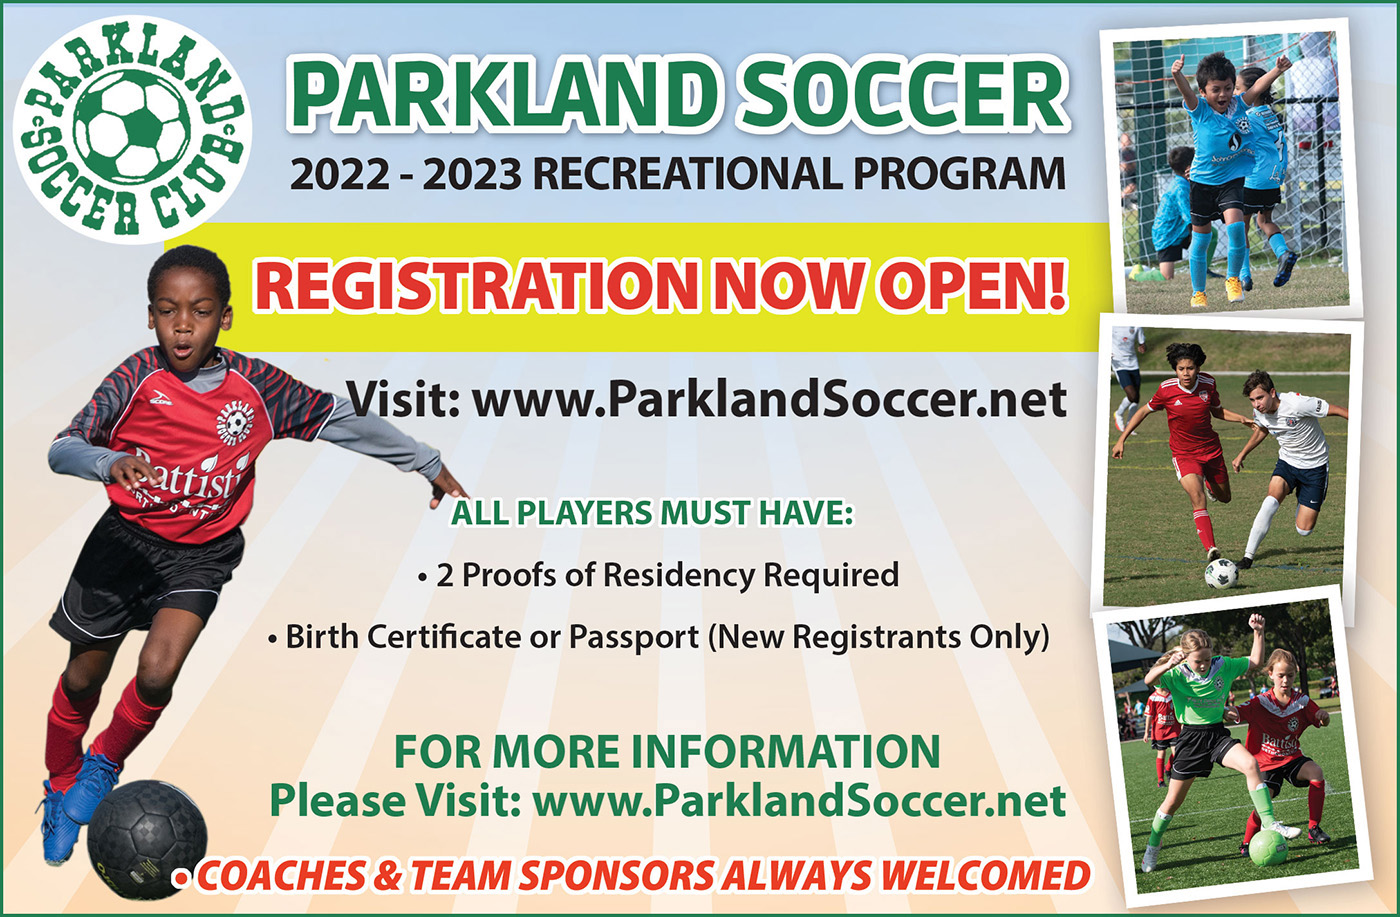 arkland Soccer 2022